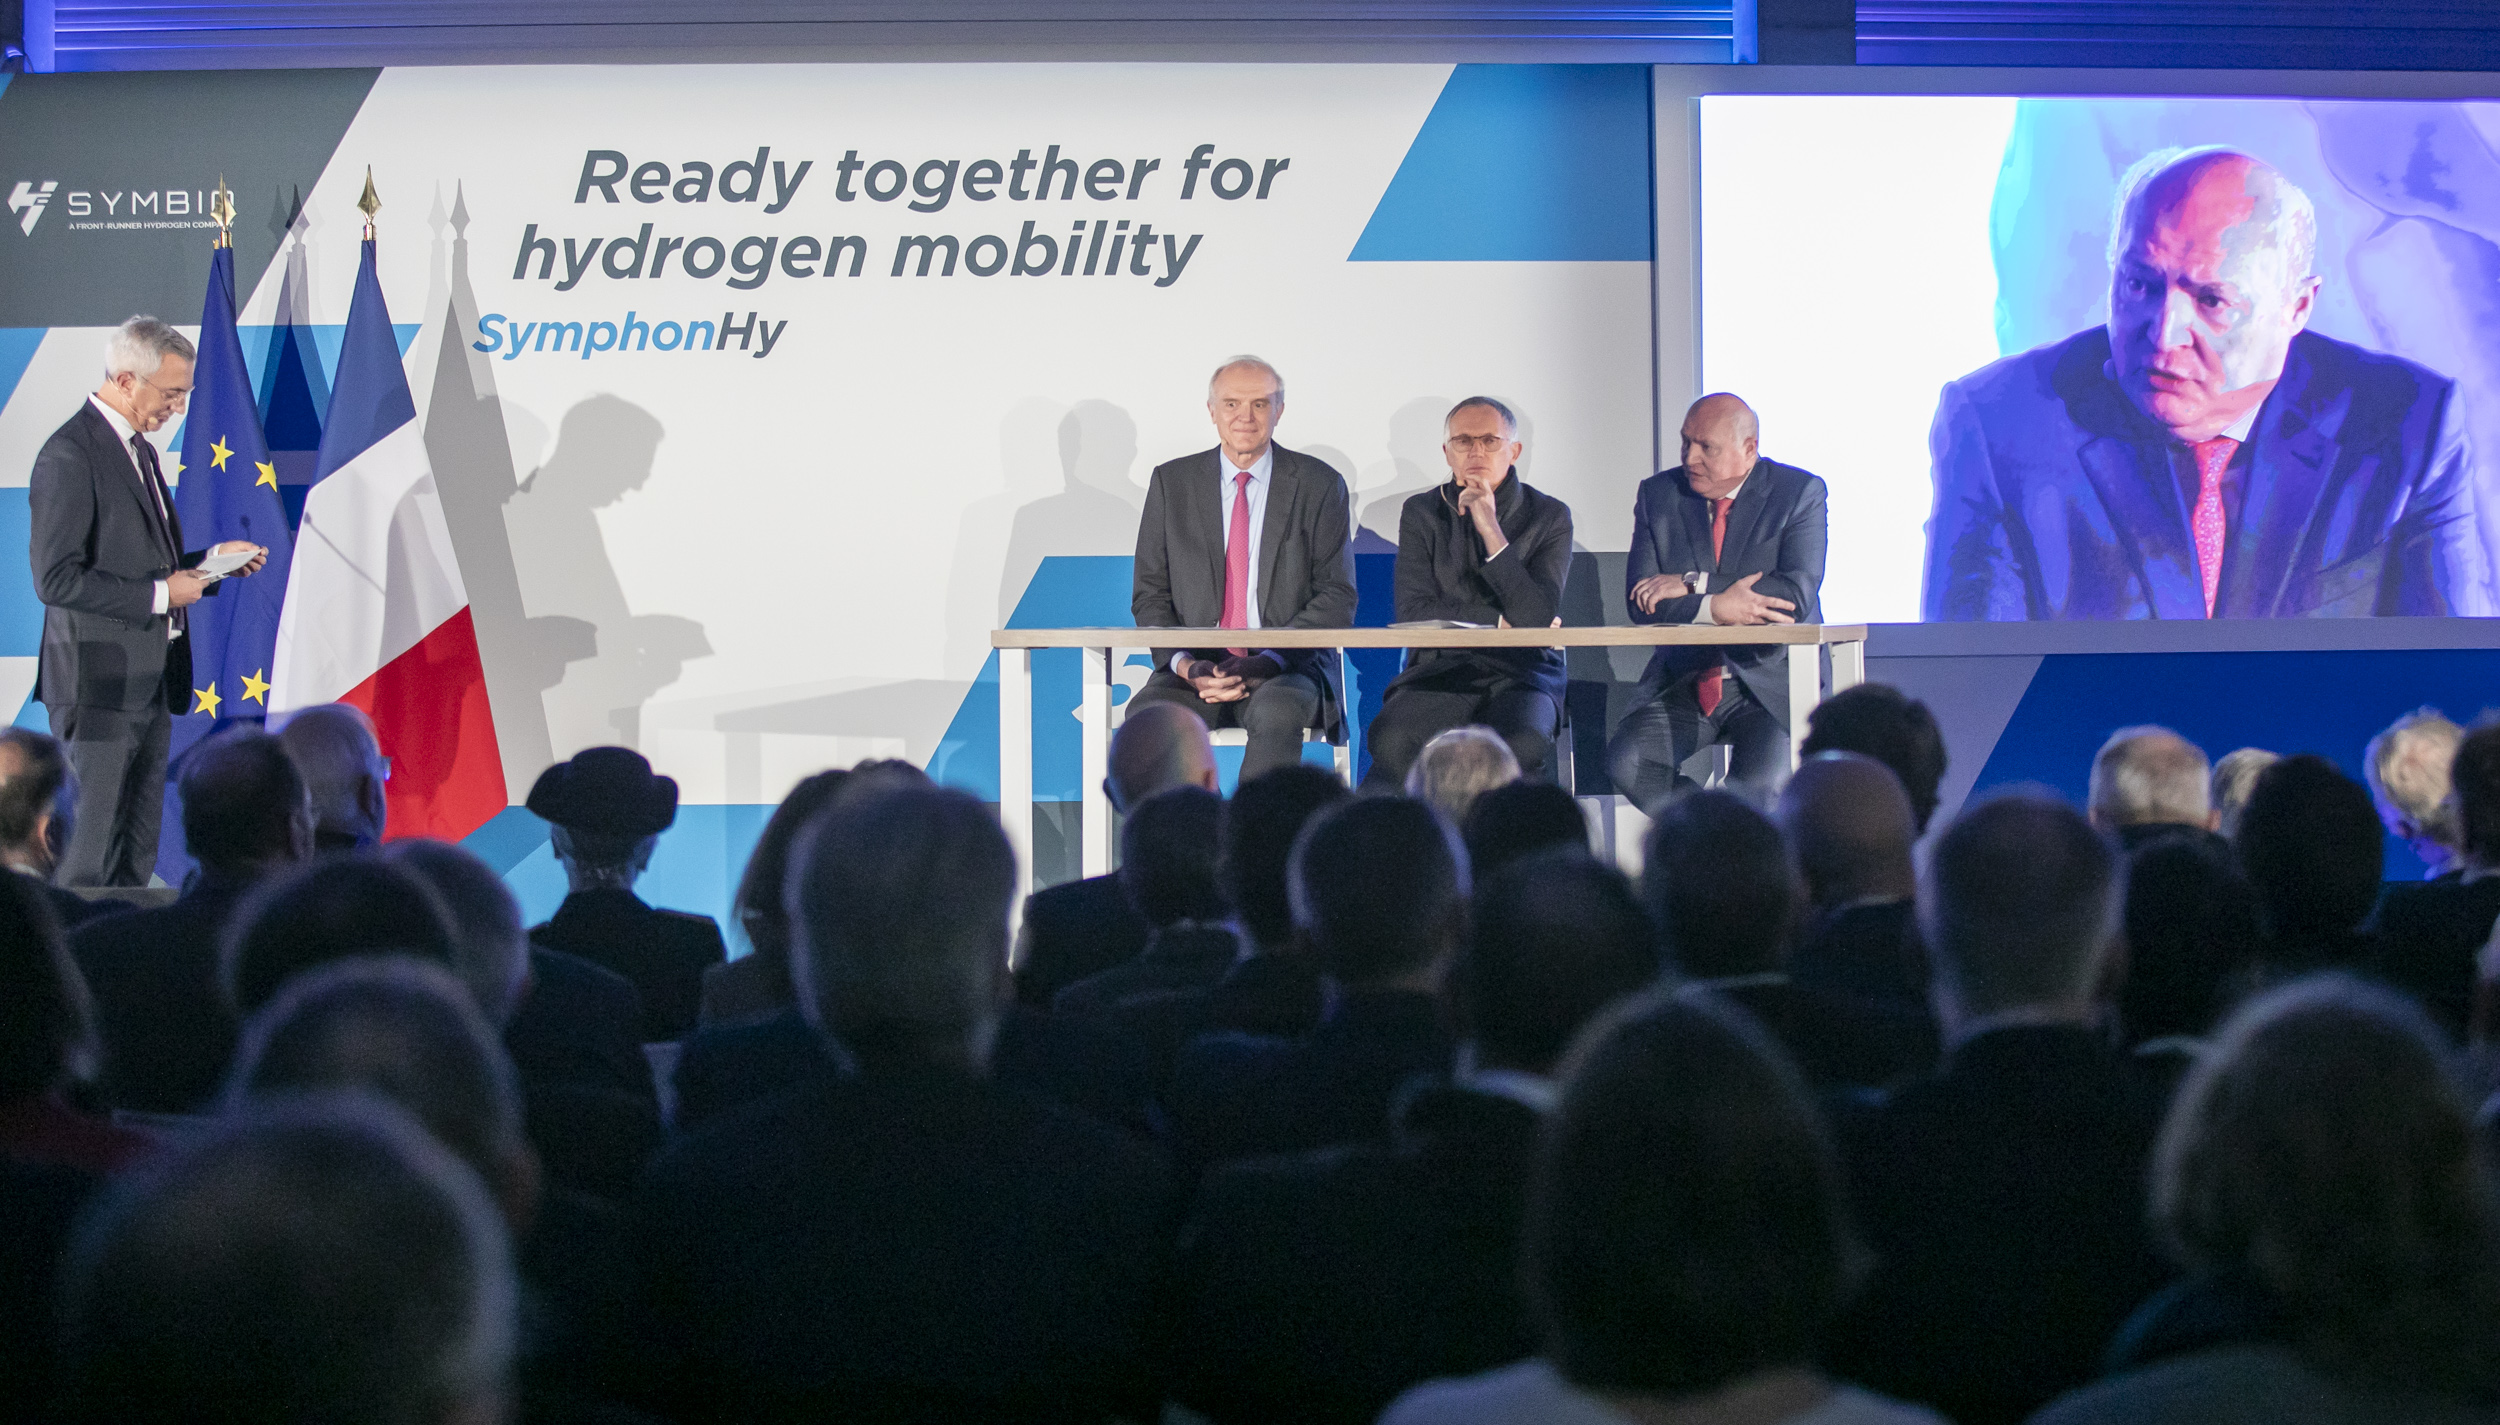 Hydrogène : l'inauguration de la gigafactory de Symbio lance l'Europe dans la course face aux Etats-Unis